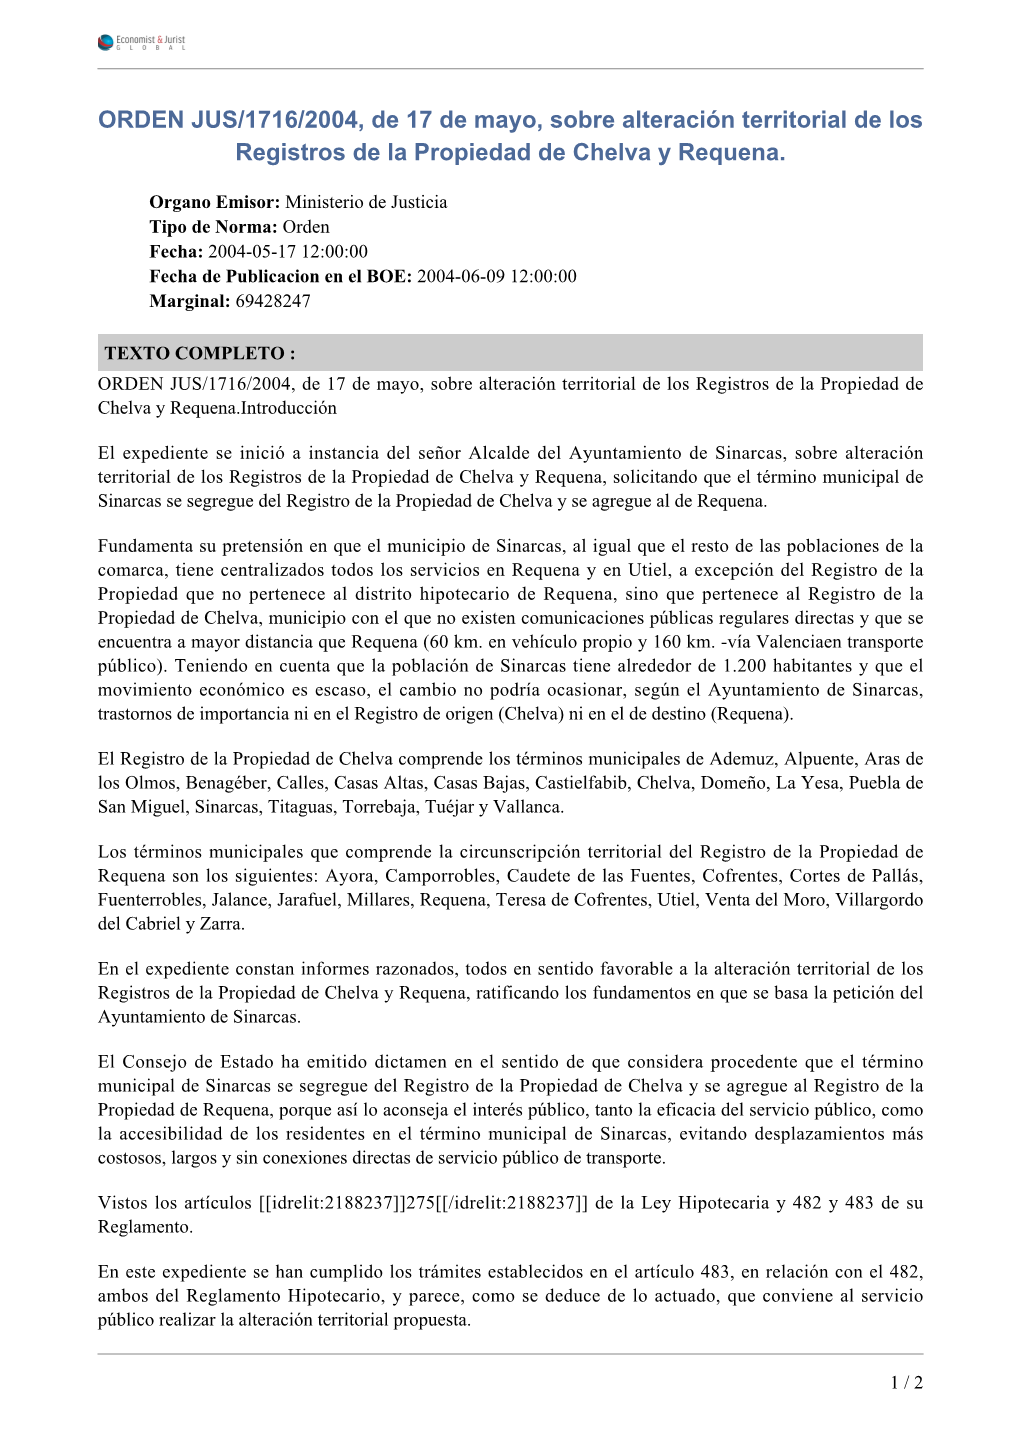 ORDEN JUS/1716/2004, De 17 De Mayo, Sobre Alteración Territorial De Los Registros De La Propiedad De Chelva Y Requena